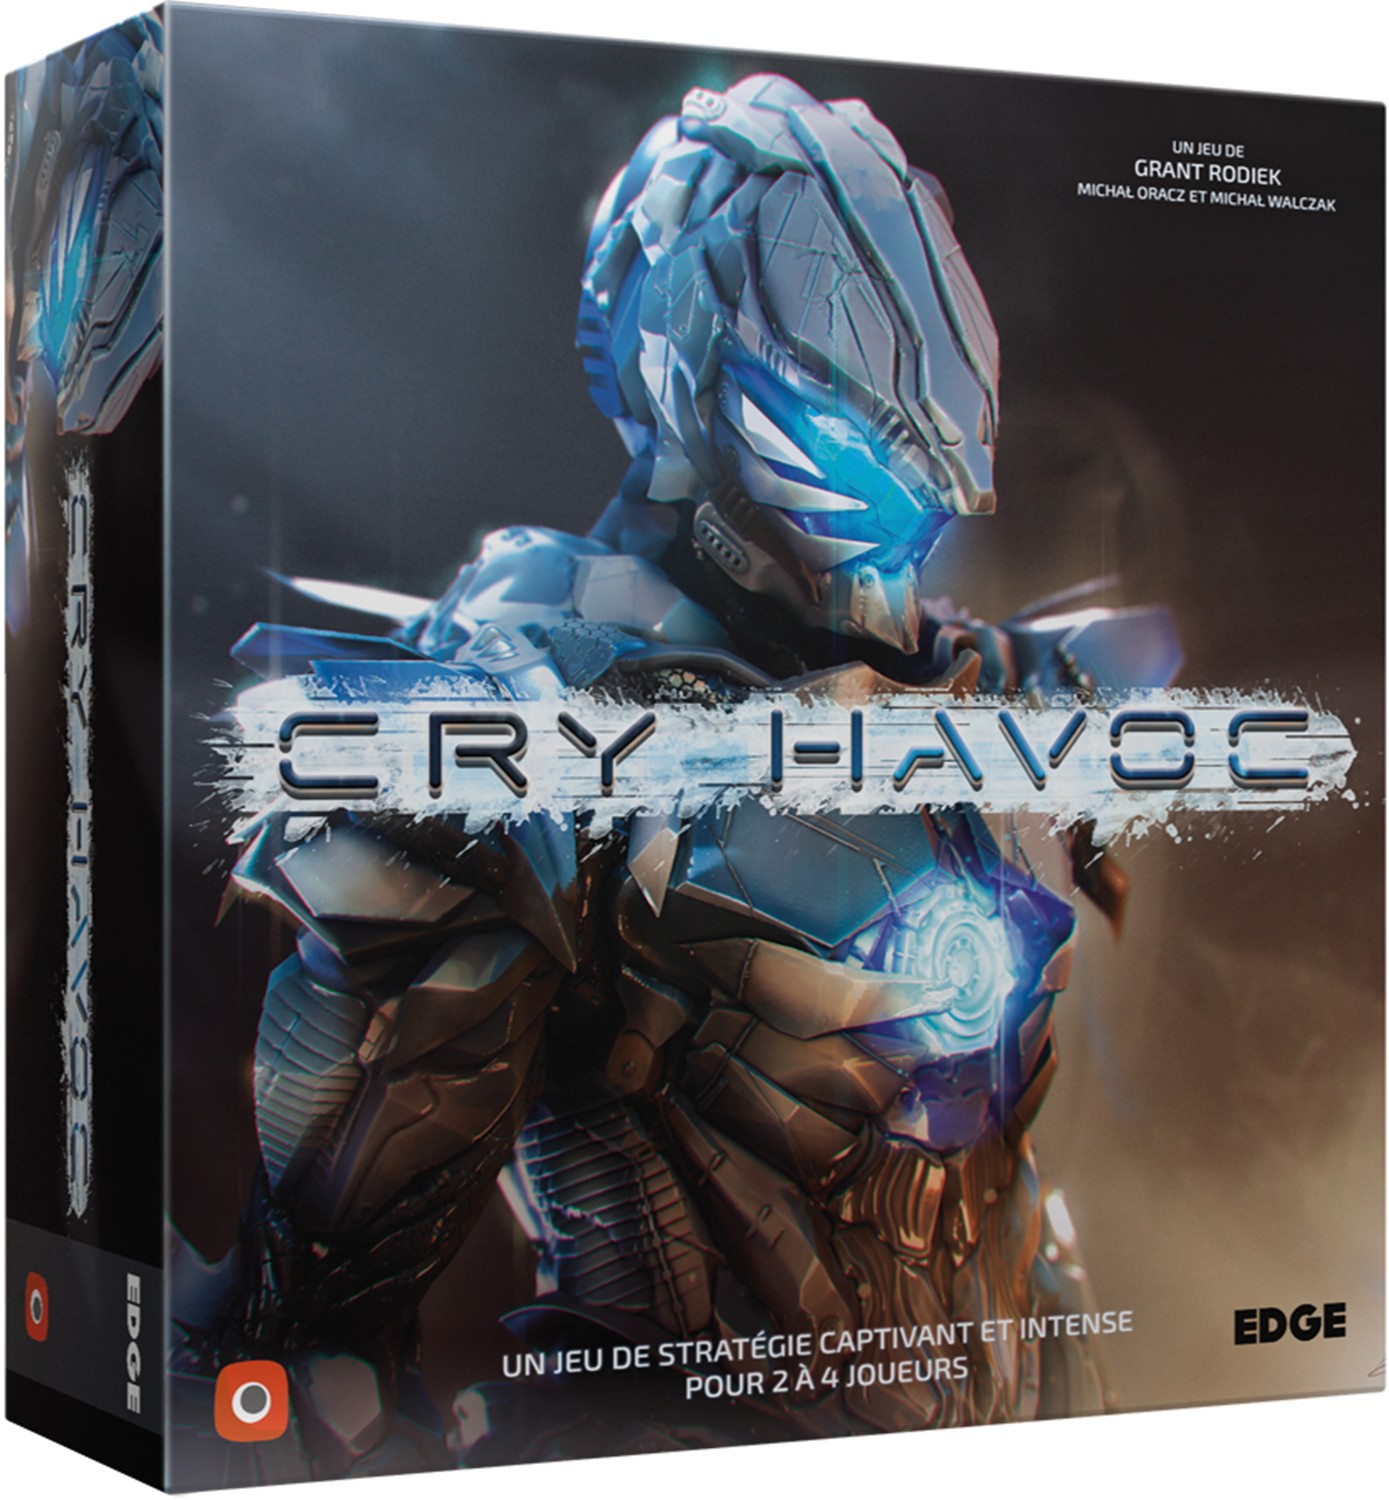 Boîte du jeu Cry Havoc